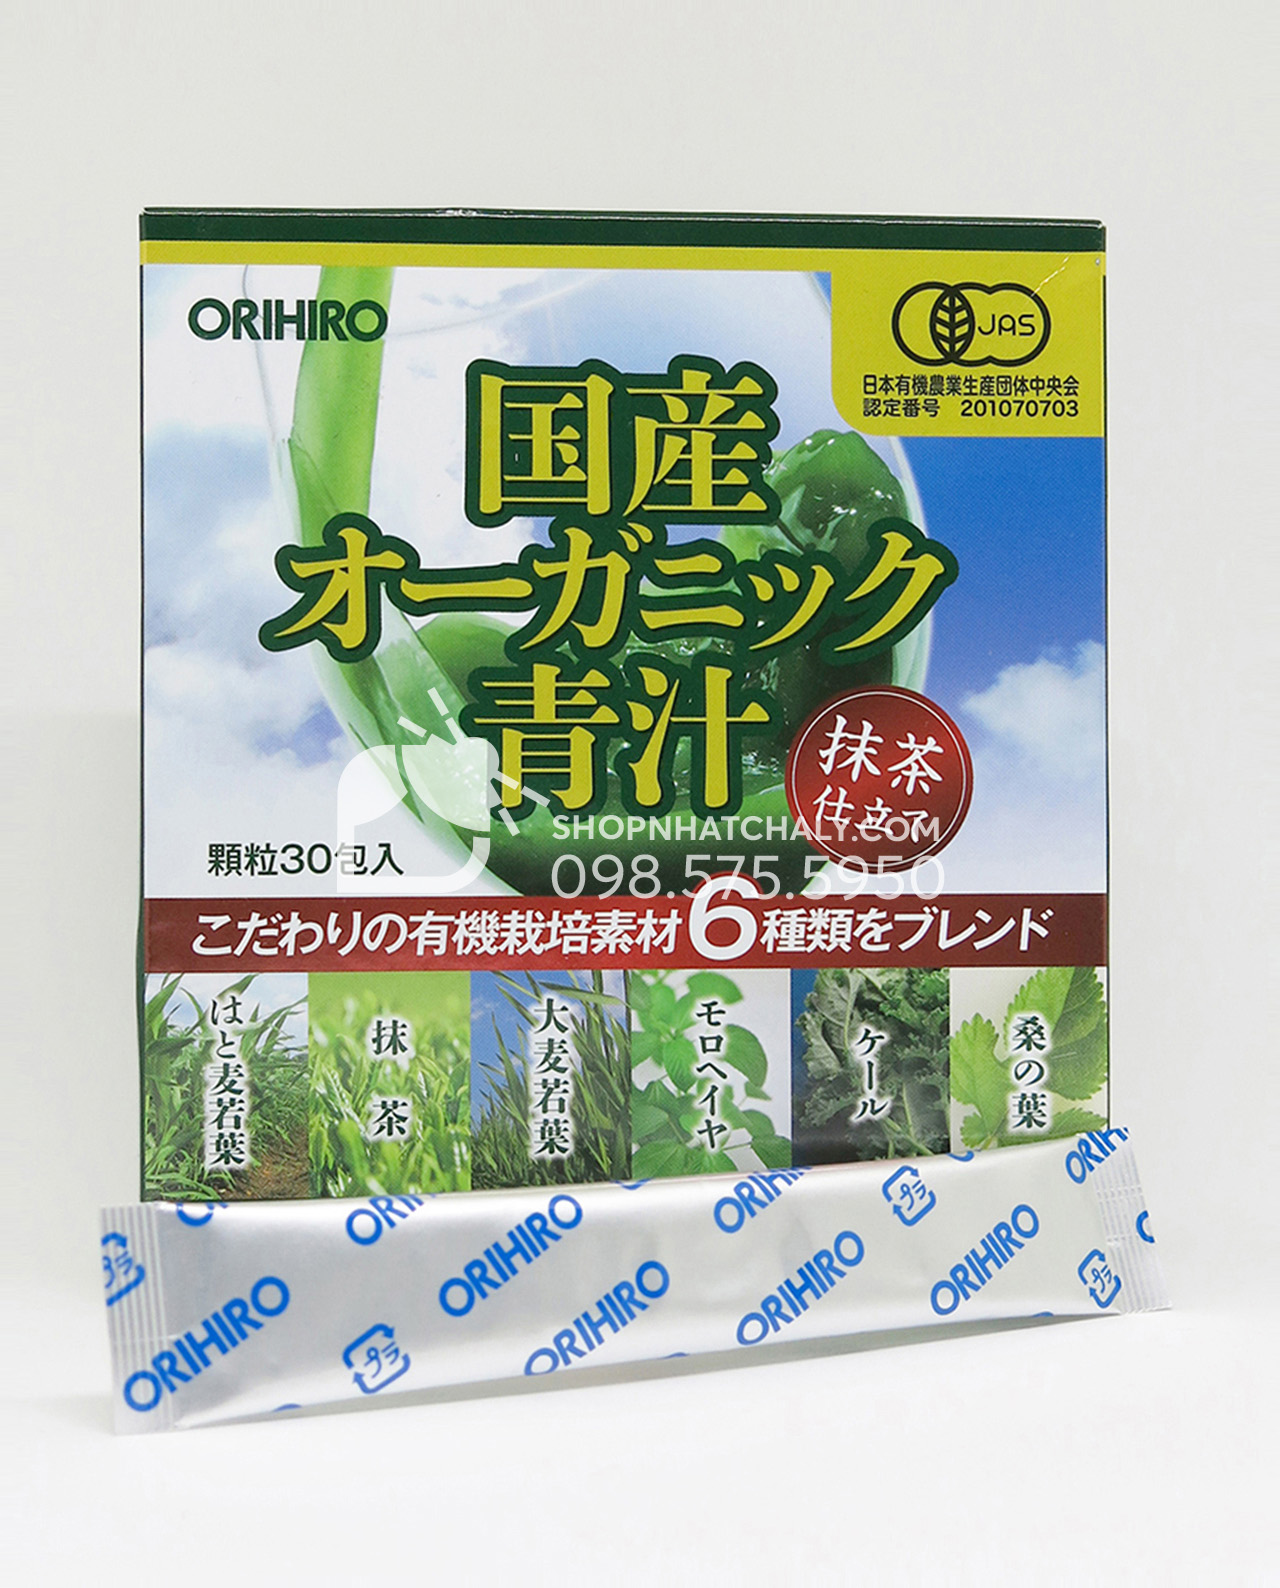 Bột rau xanh của Nhật Aojiru (bột rau xanh lá đại mạch non) Orihiro là sản phẩm organic chế biến từ nguồn rau trồng 100% tại Nhật Bản, bằng phương pháp trồng Organic sạch không sử dụng hoá chất hay thuốc kích thích tăng trưởng